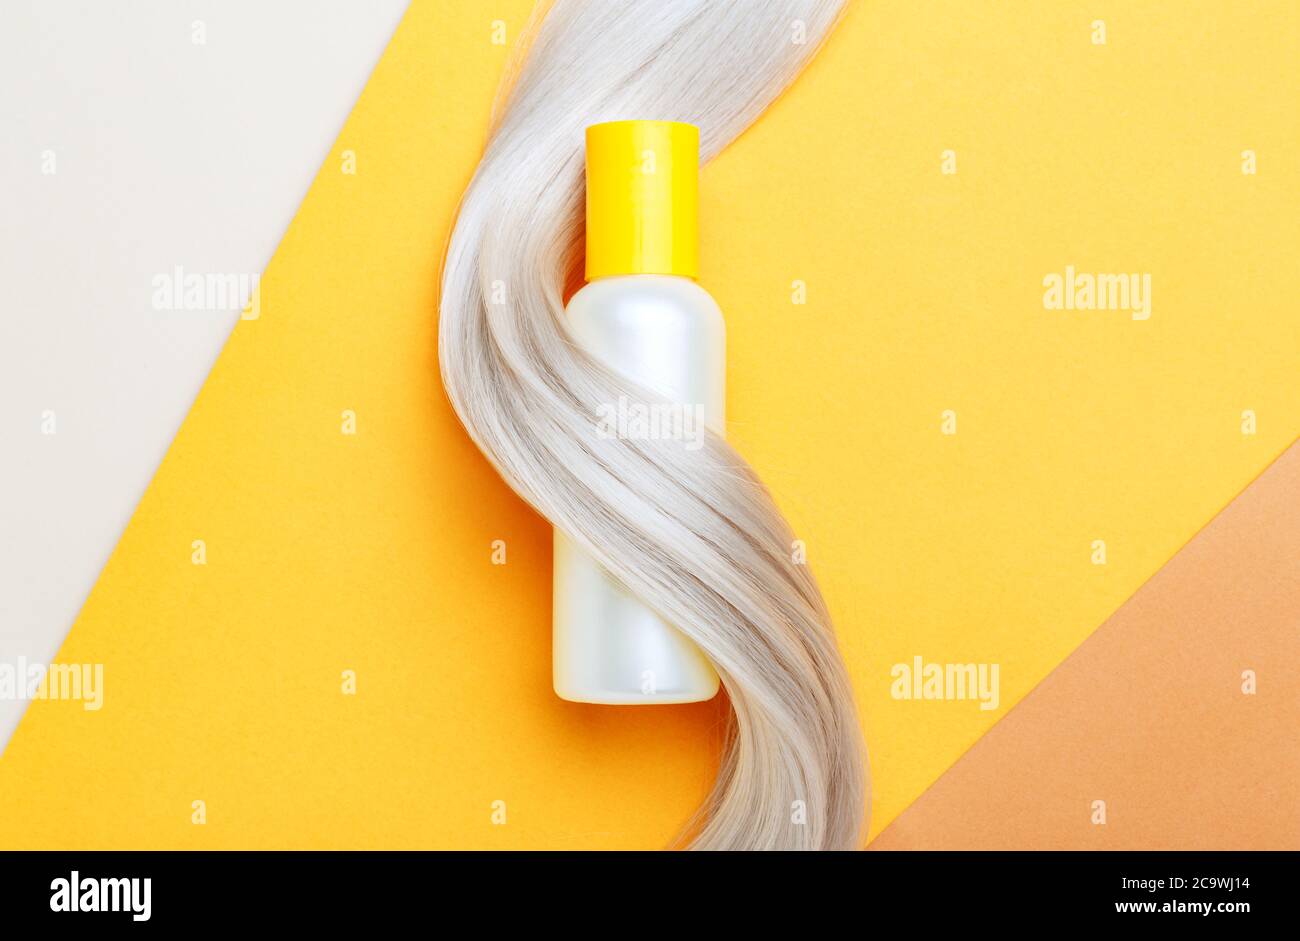 Shampoo botella de mascup hilo en el mechón de pelo rubio sobre fondo de color naranja. Champú de botella amarilla. Espacio de copia plano. Cosméticos para el cuidado del cabello Foto de stock